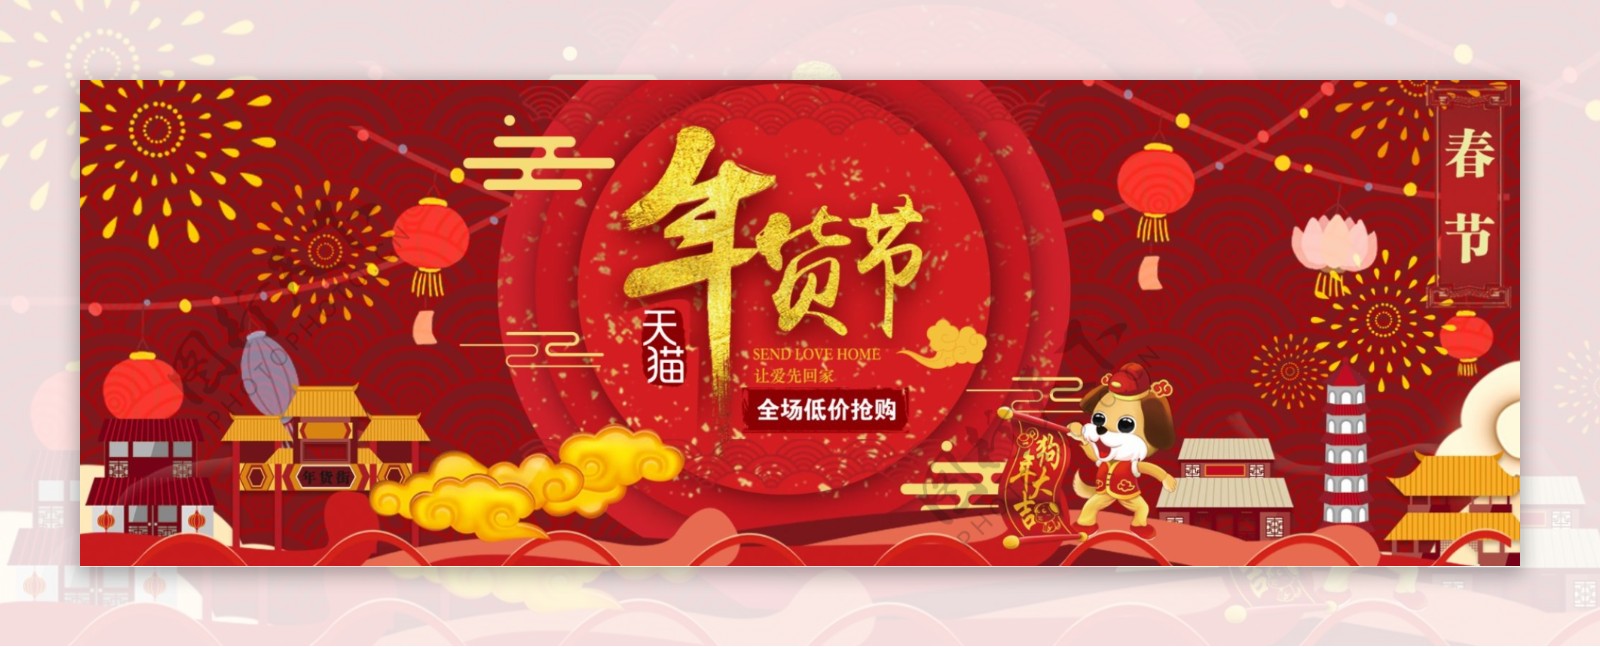 红色烟花灯笼中国风年货节淘宝电商海报